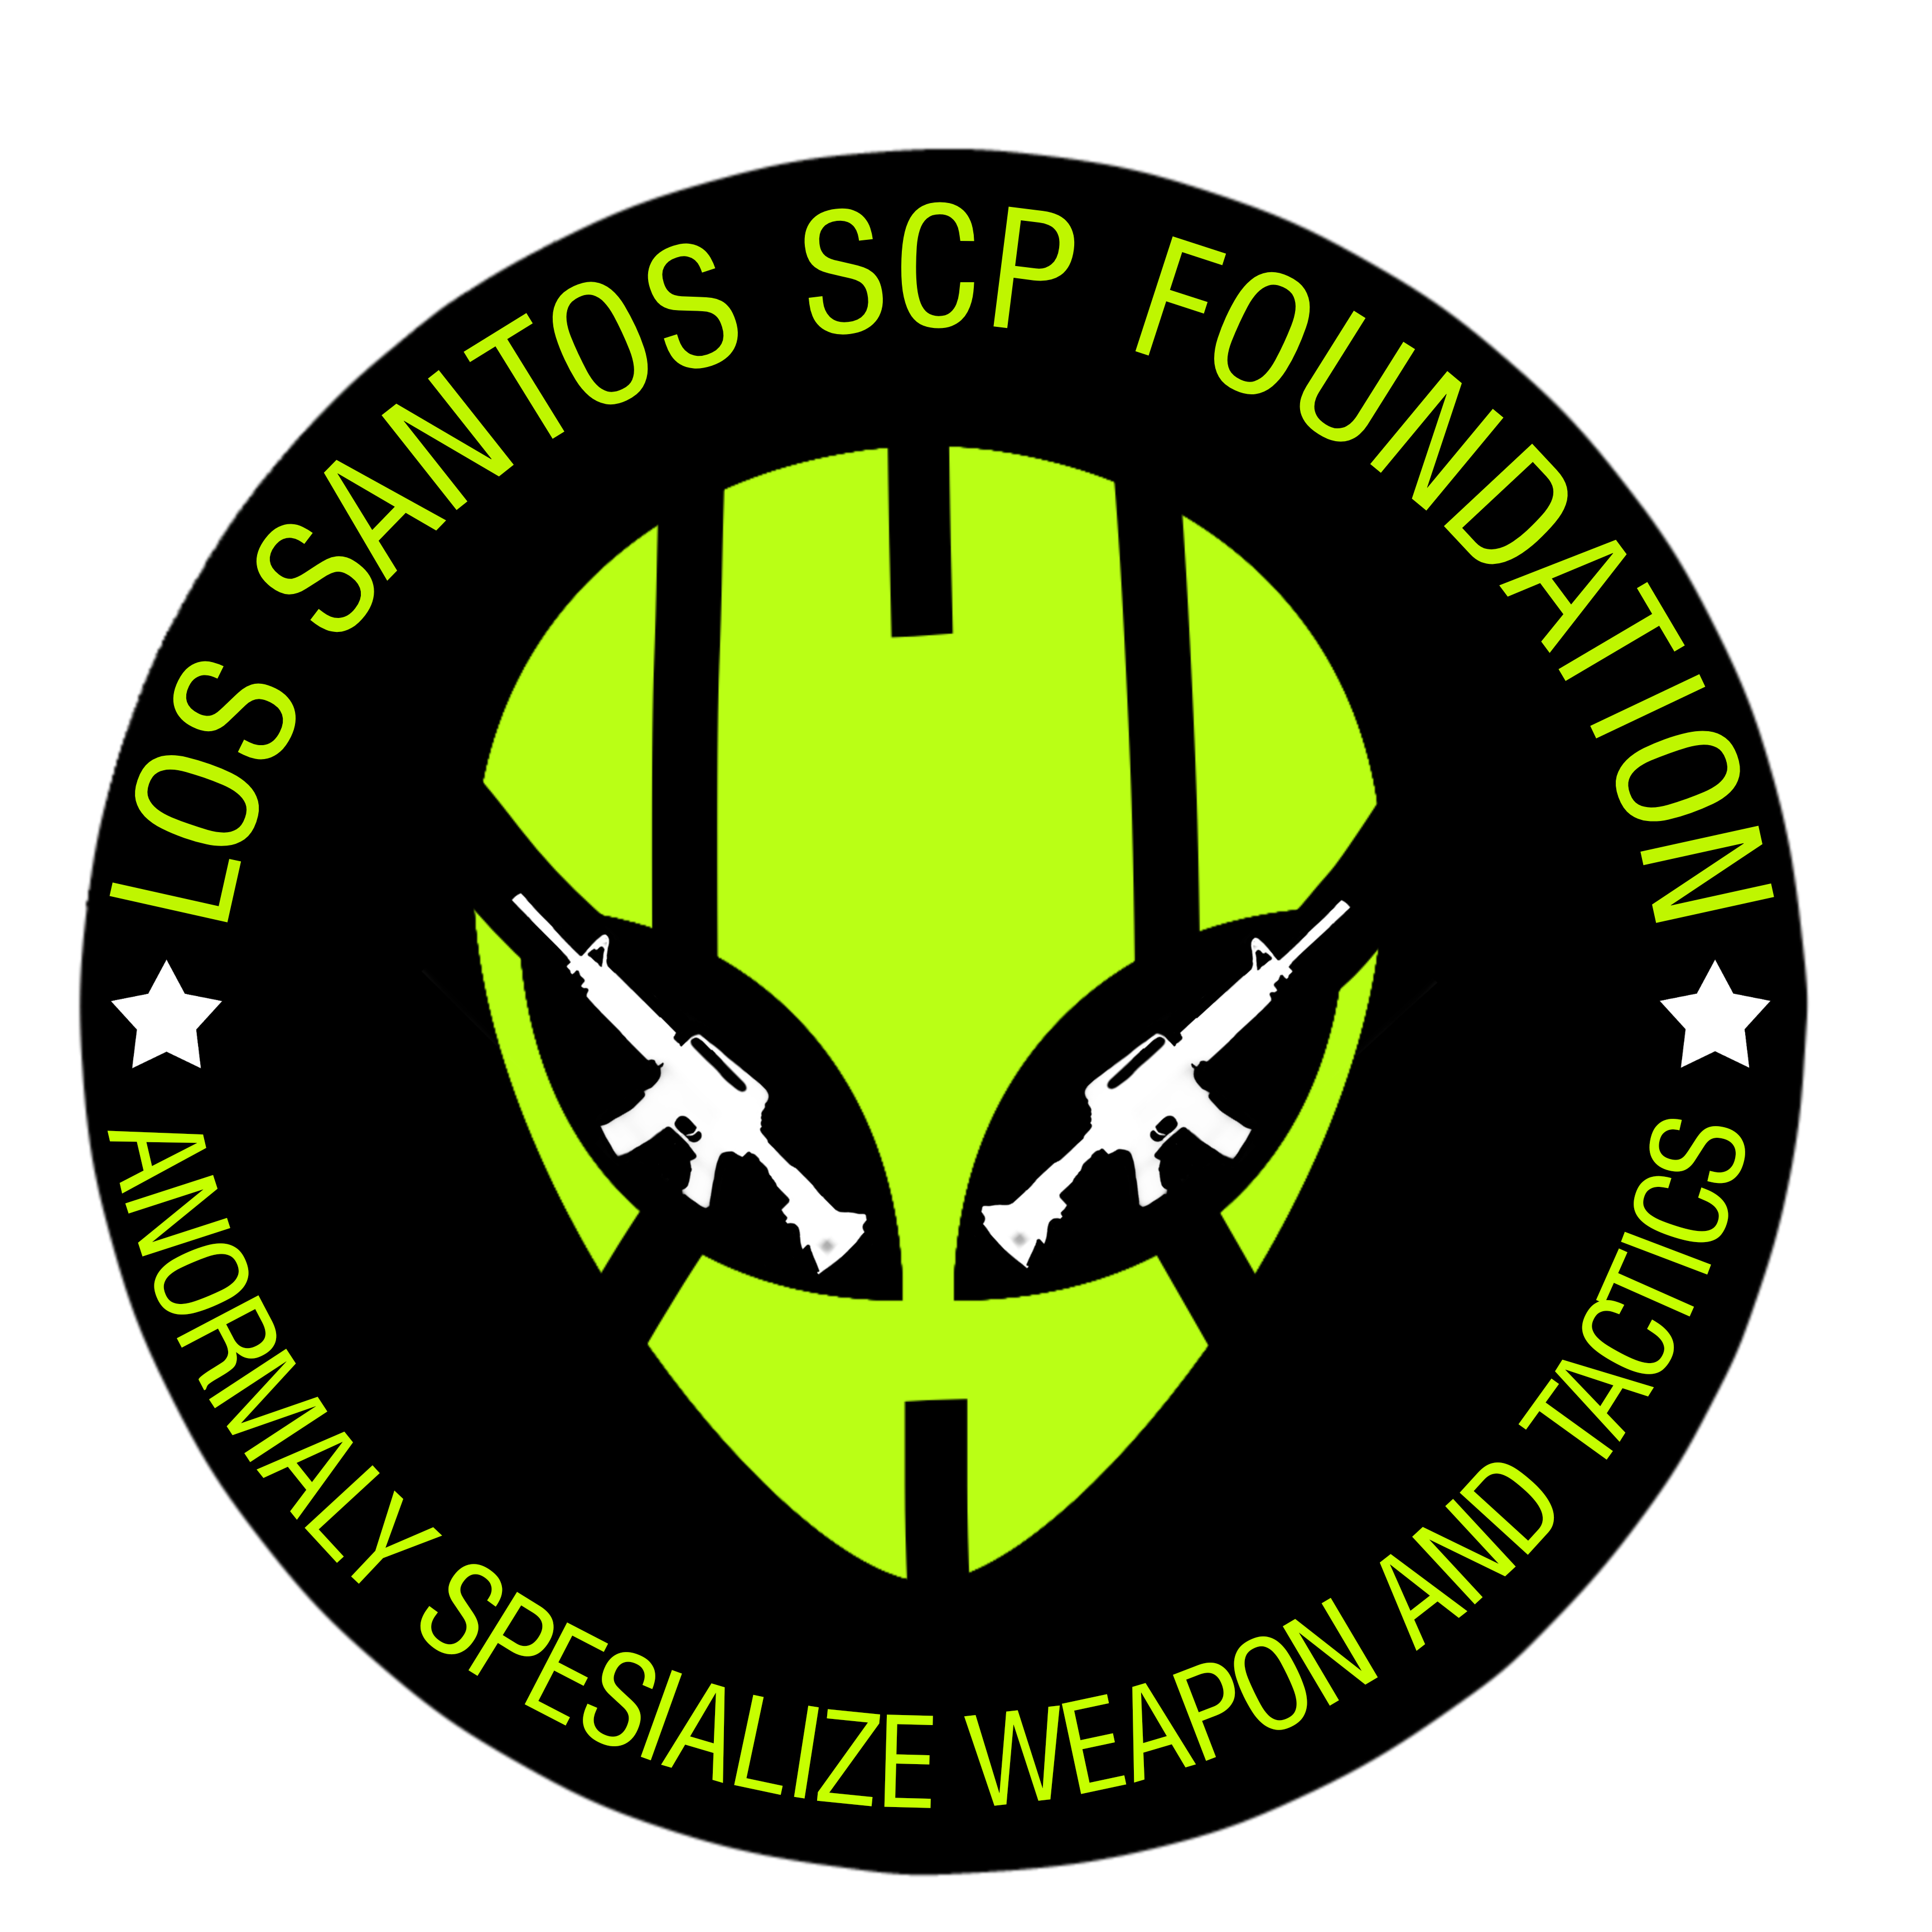 SCP-008-ID - Yayasan SCP